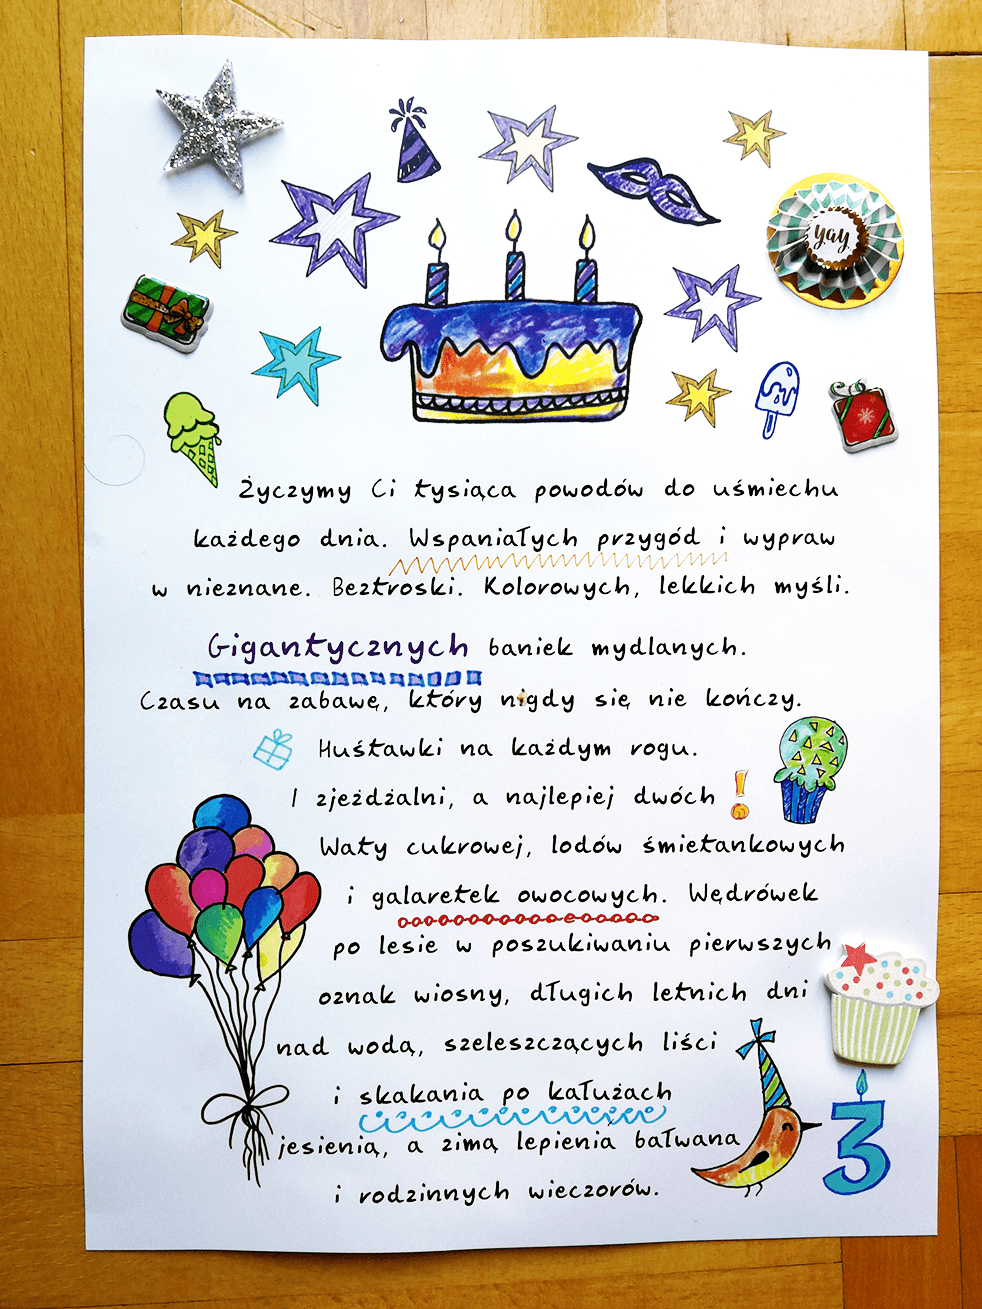 Personalizowany prezent - urodzinowy list od rodzica do dziecka